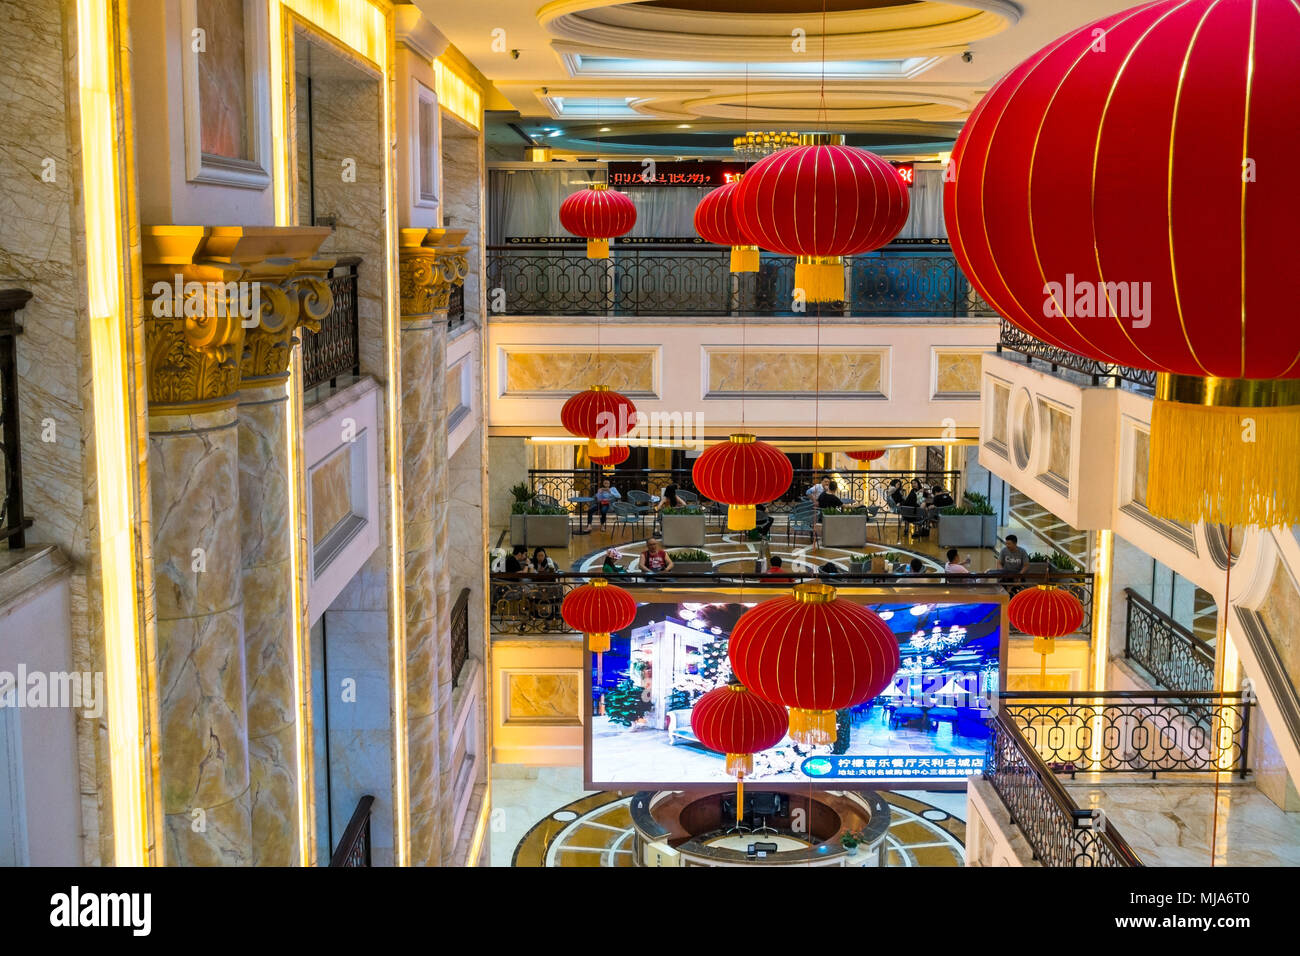 Immeuble de bureaux de luxe sur le thème de la Chine et du centre commercial, avec des lanternes chinoises rouge Banque D'Images